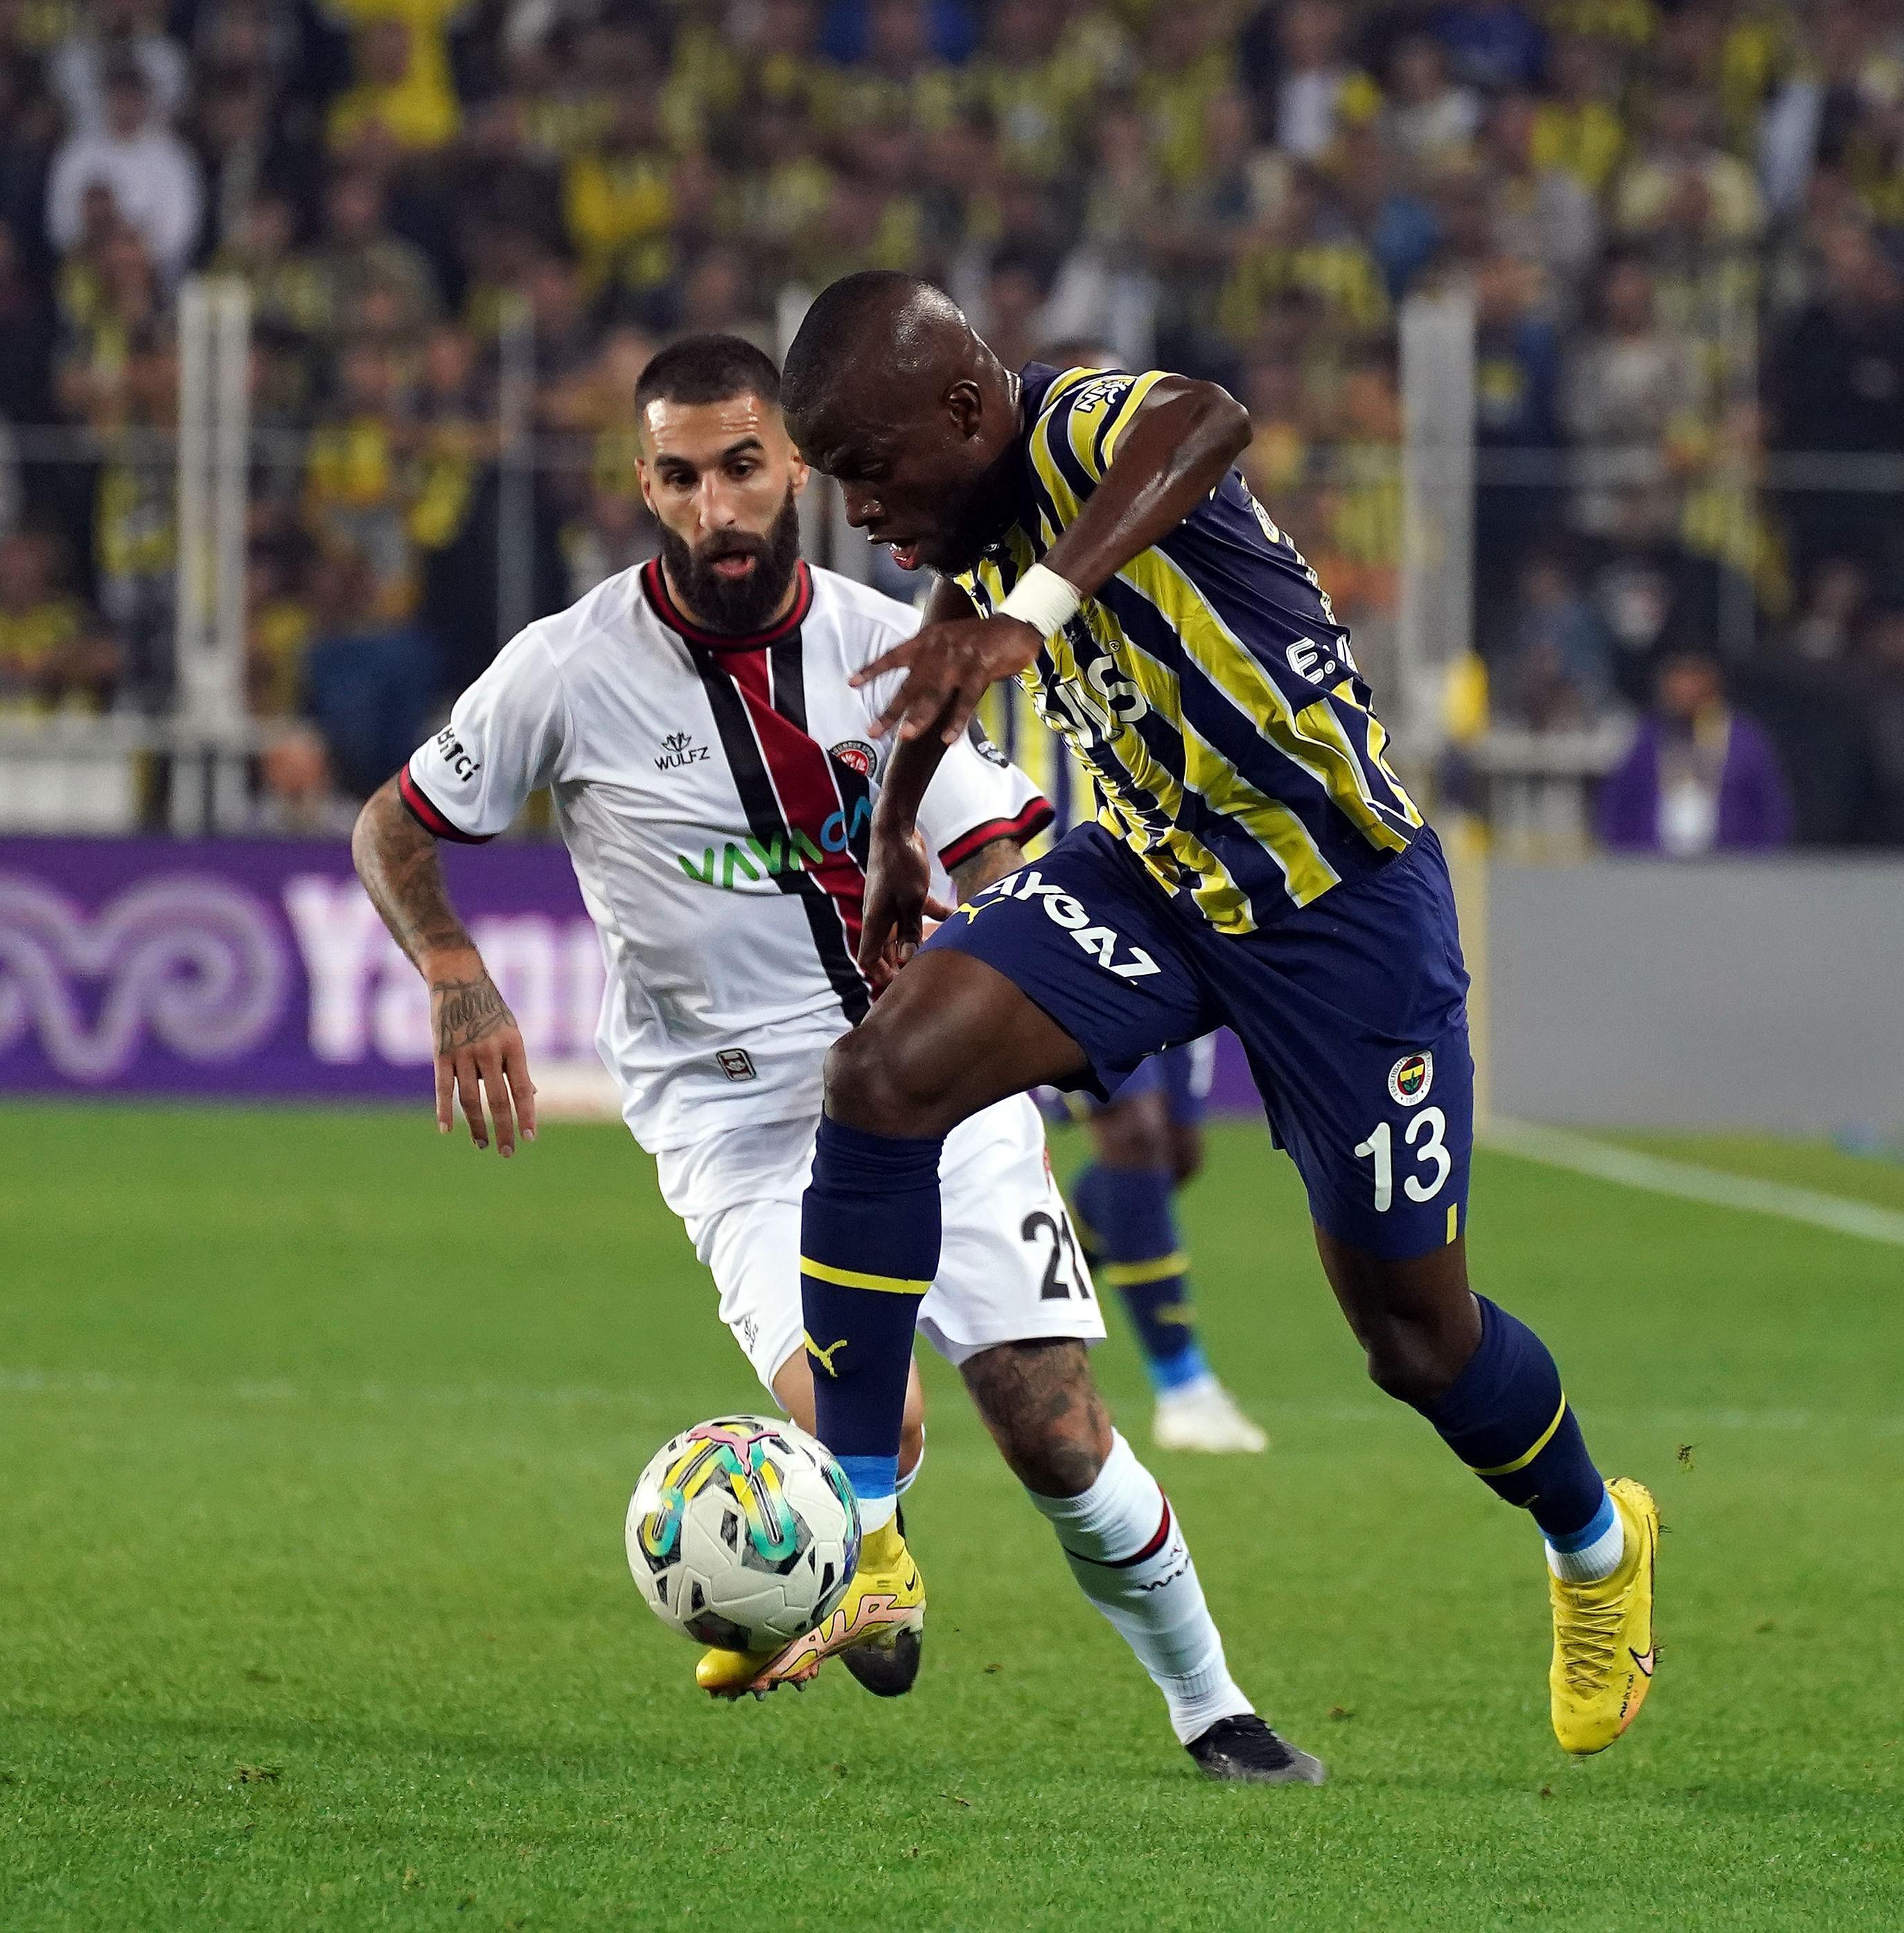 (ÖZET) Fenerbahçe-Fatih Karagümrük maç sonucu: 5-4